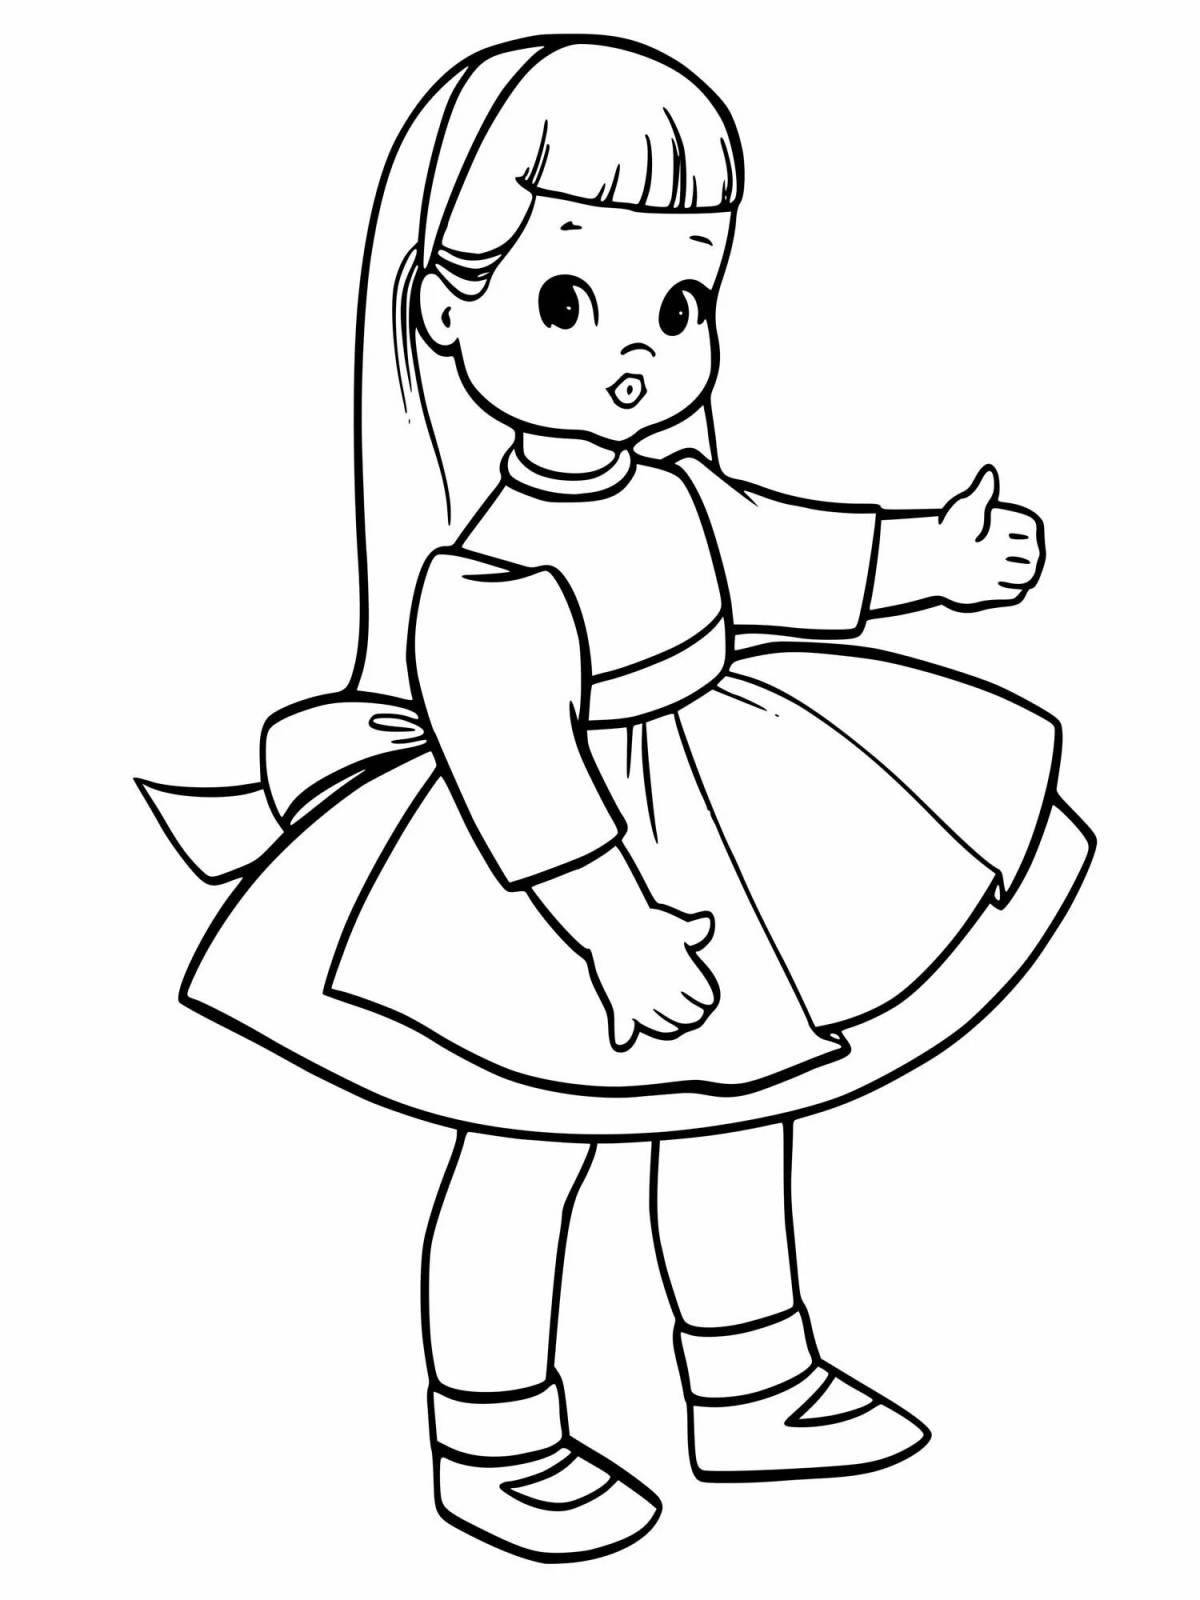 Fancy coloring doll in dress